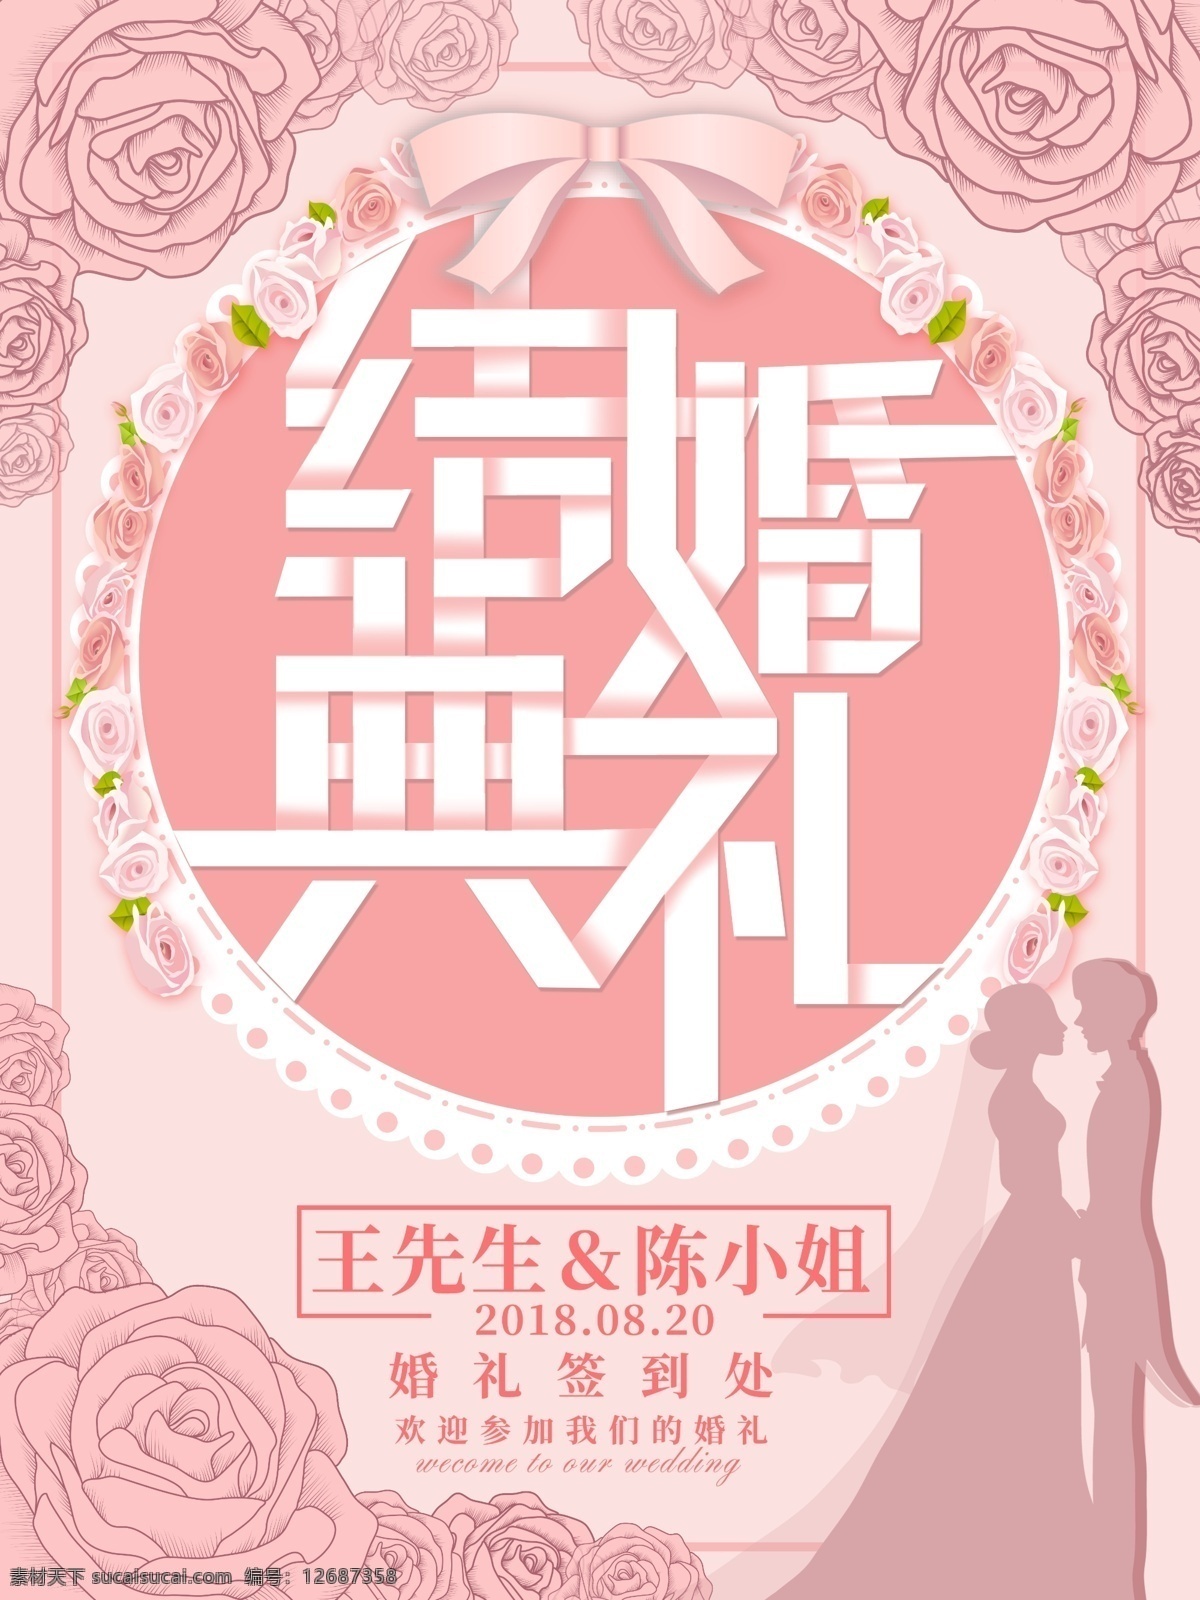 粉色 浪漫 结婚典礼 婚礼 海报 结婚 邀请函 情人 玫瑰 新婚 酒席